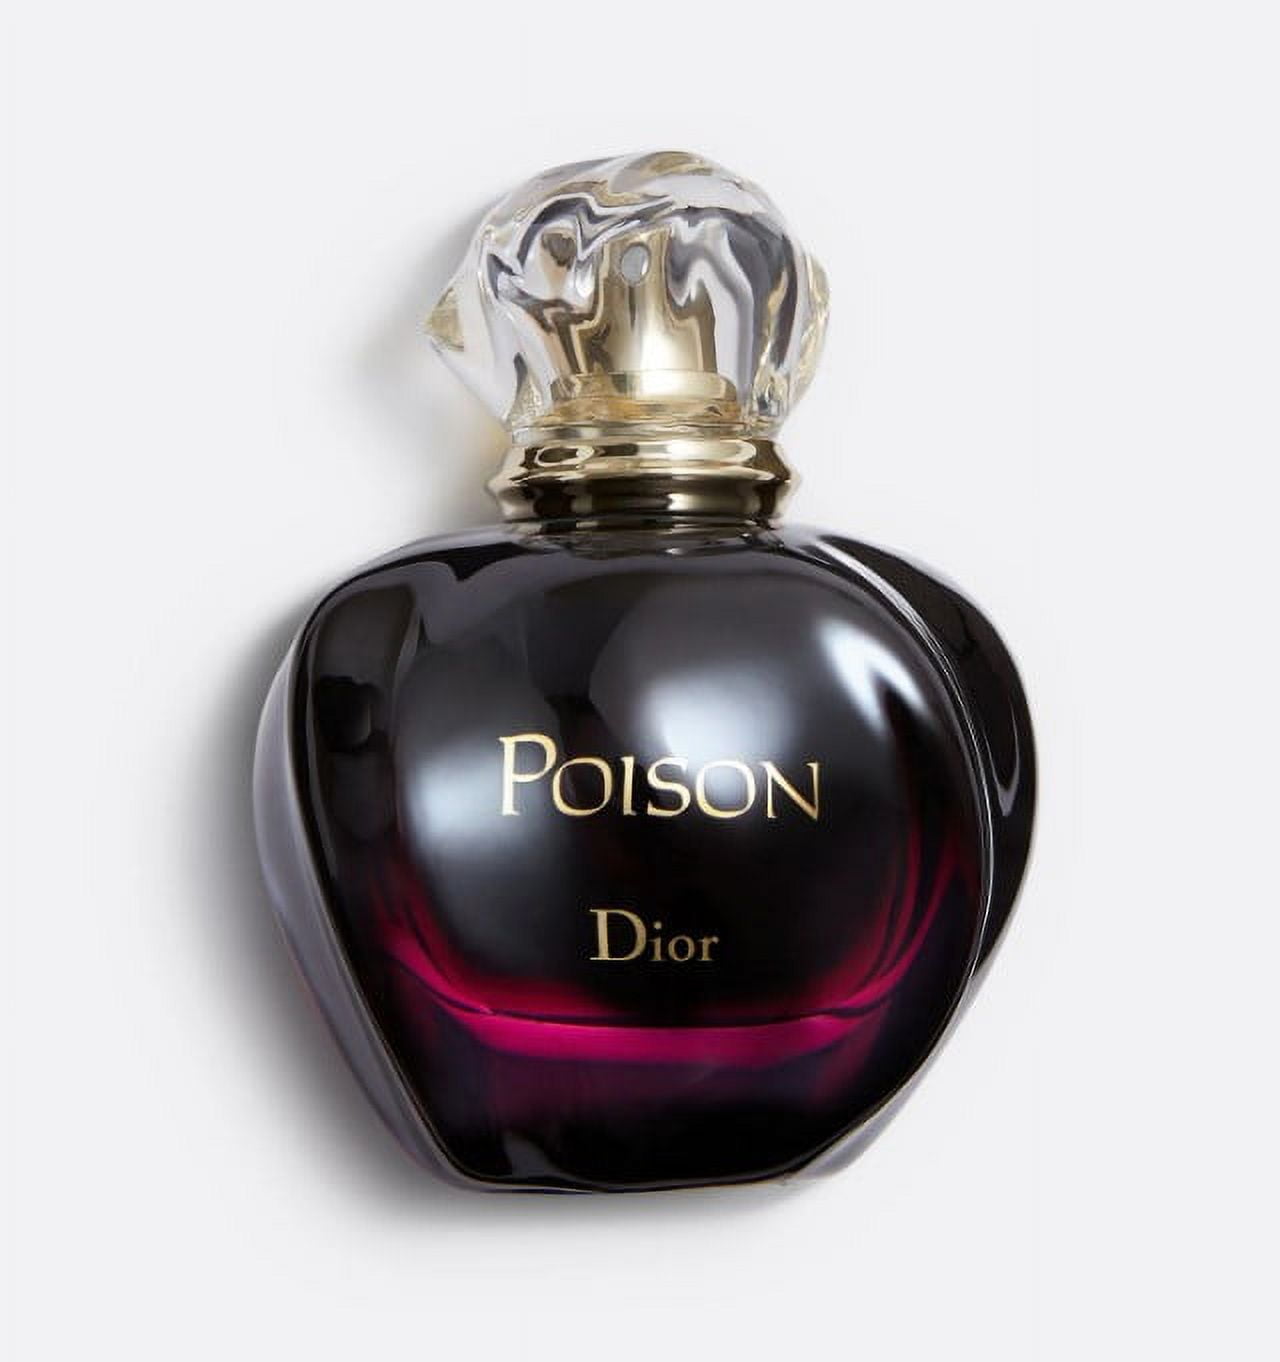 Poison by Christian Dior Eau de Toilette 3.4 fl oz *EN 